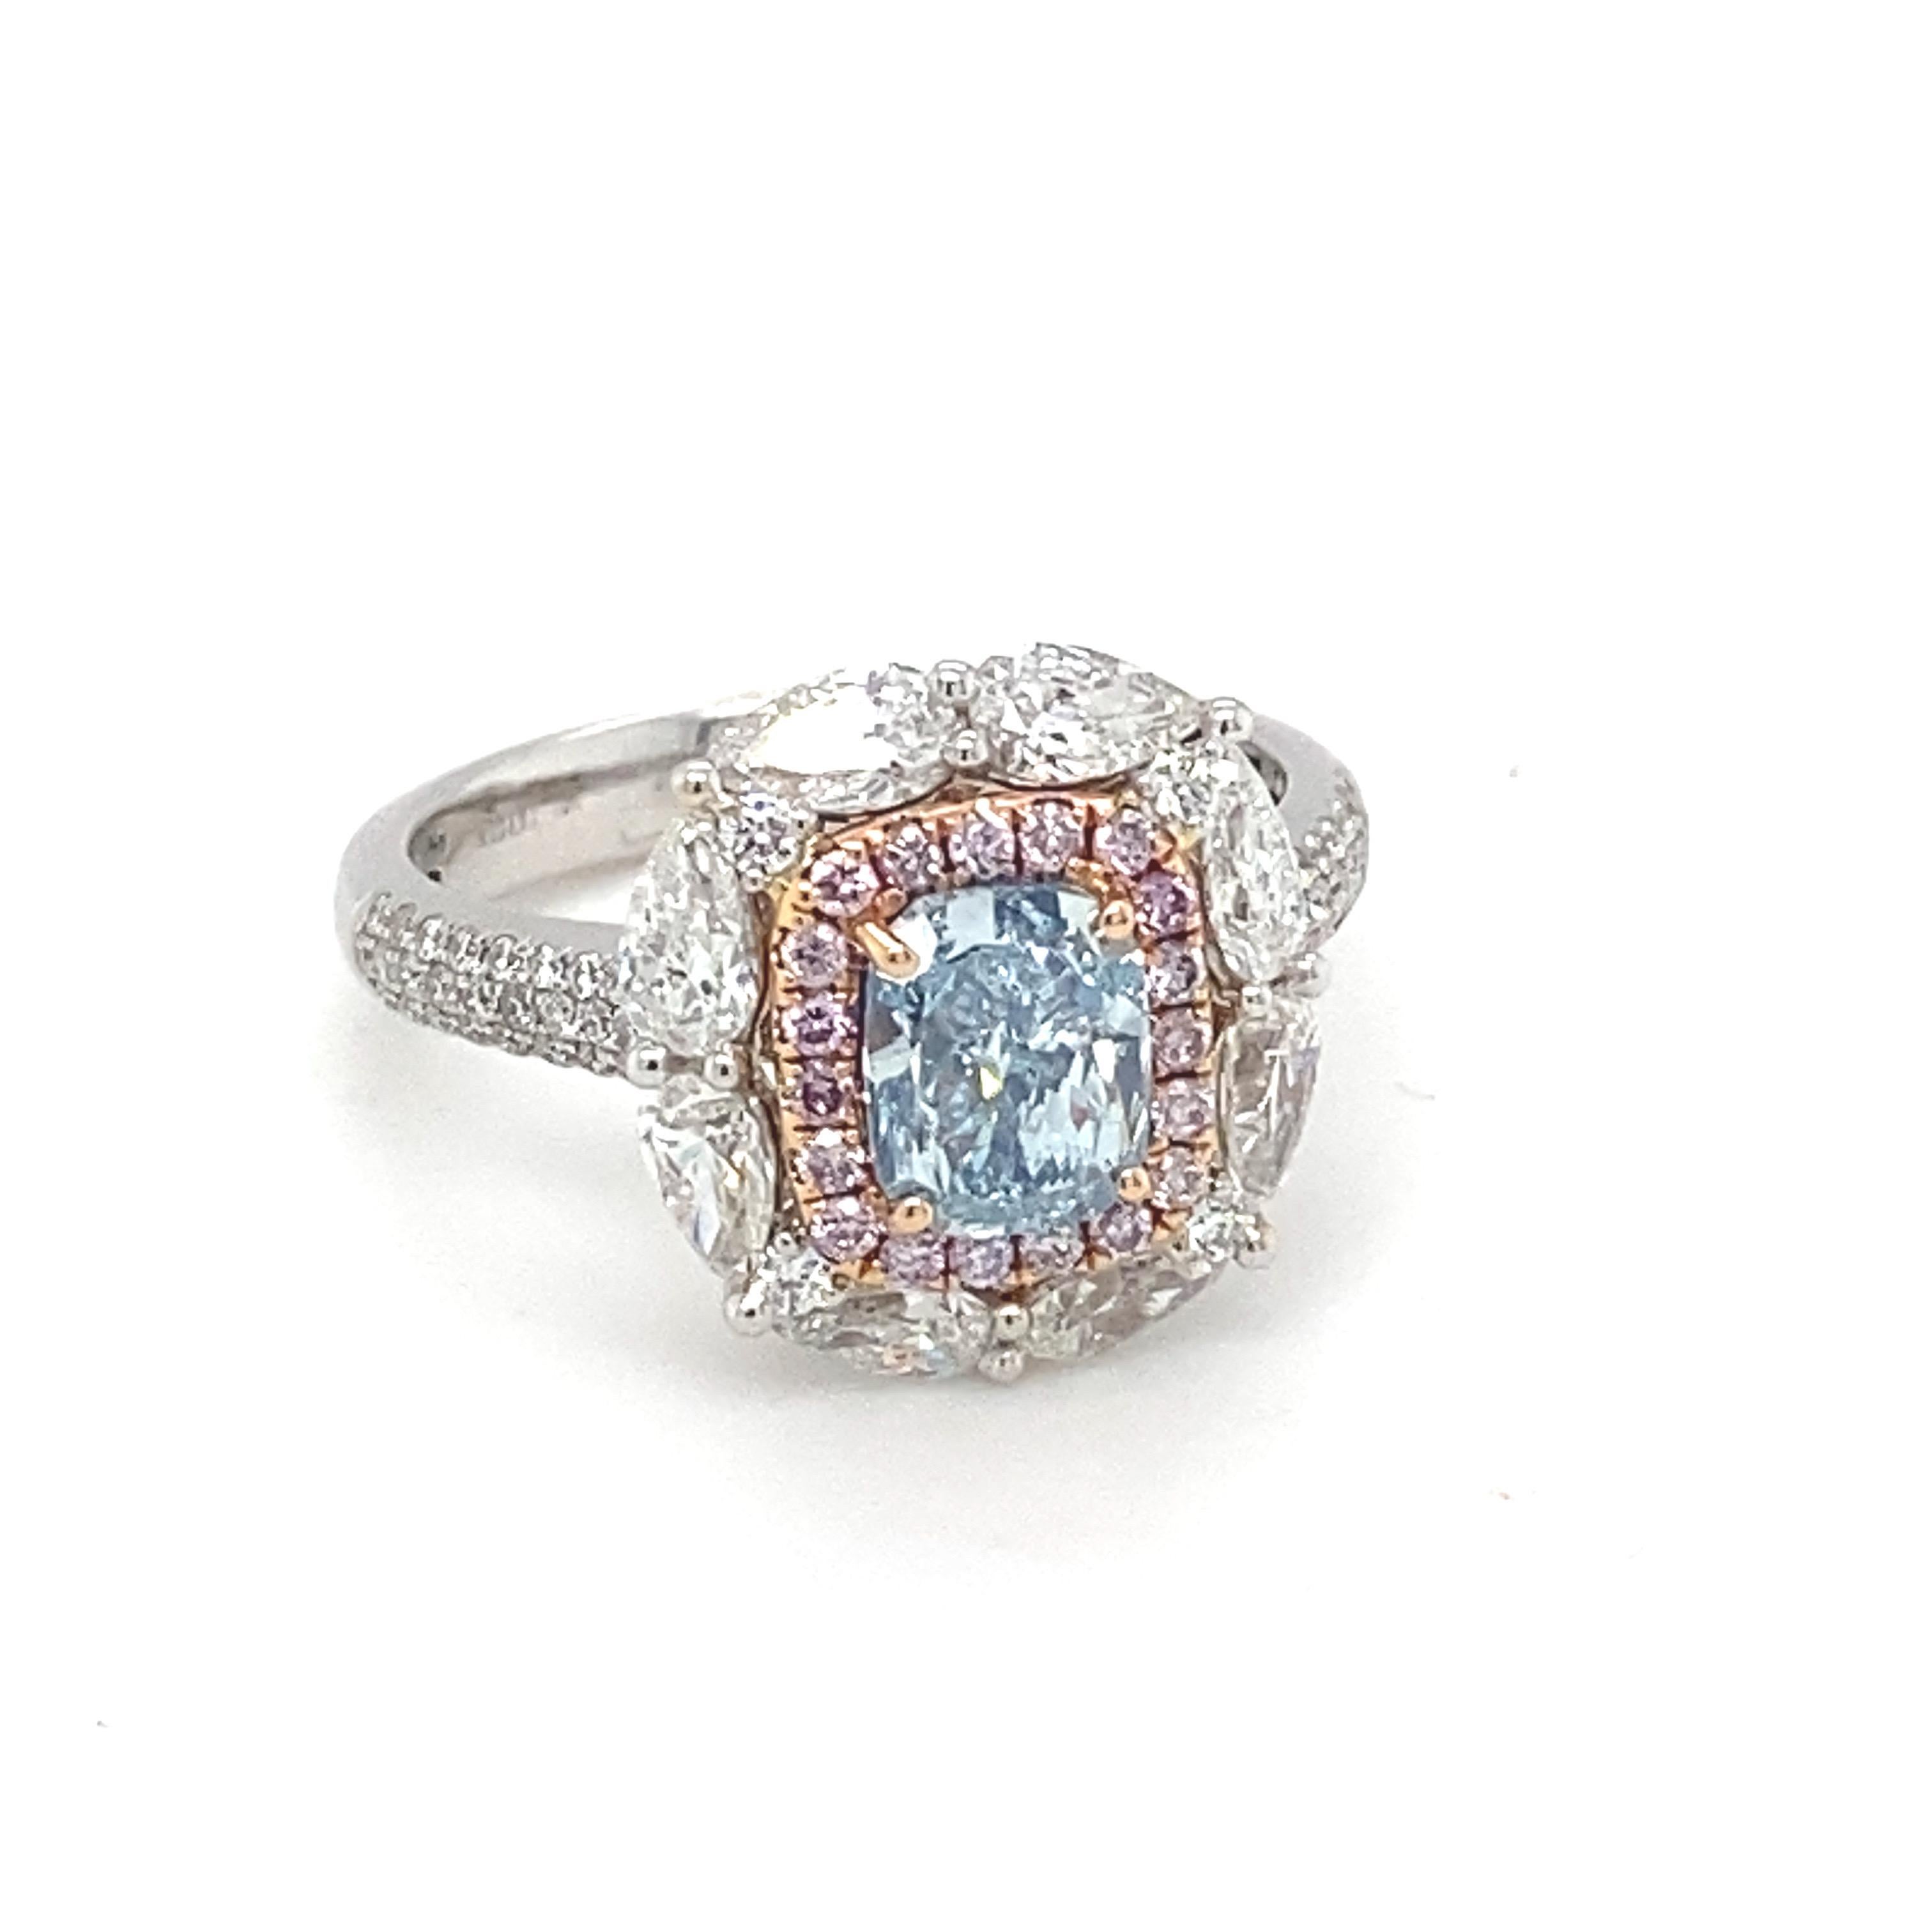 Dieser opulente Ring rühmt sich eines höchst begehrenswerten GIA-zertifizierten 1,20 Karat kissenförmigen natürlichen blauen Diamanten, der von einem glitzernden Halo aus rosa Diamanten umrahmt wird, der von birnenförmigen Diamanten umgeben ist. Die